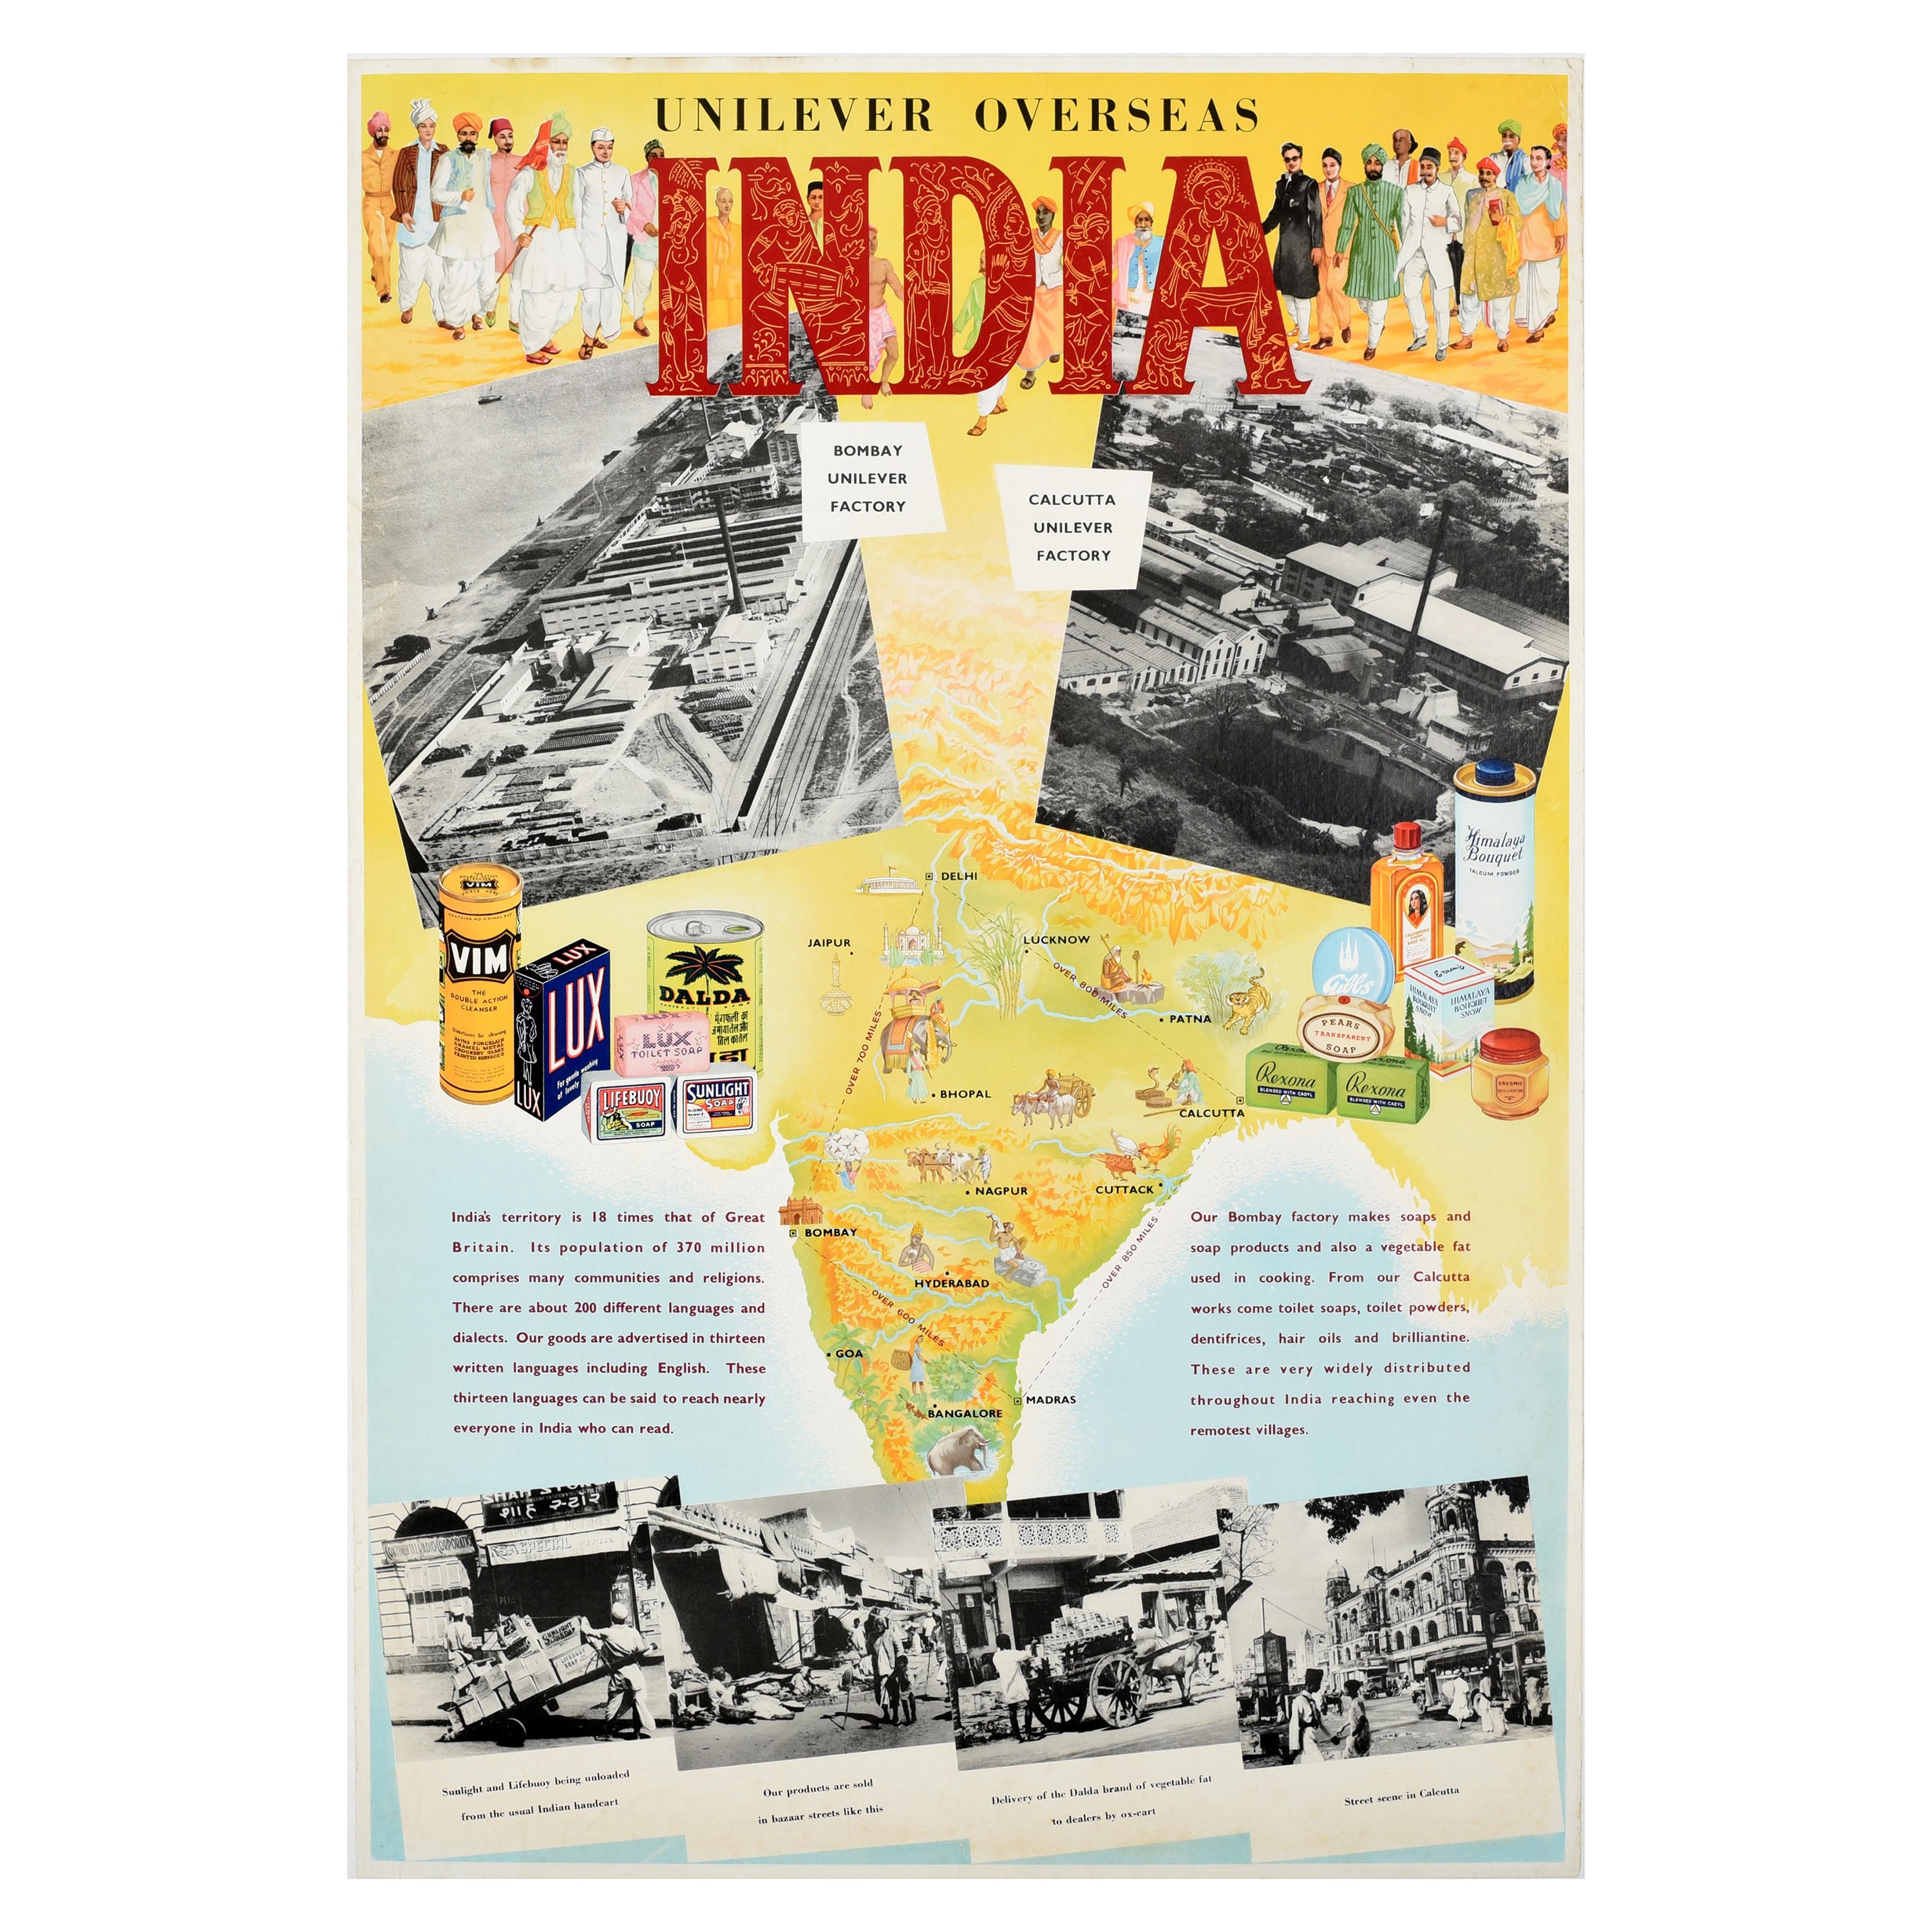 Affiche publicitaire originale et originale d'une carte illustrée d'Inde à l'étranger